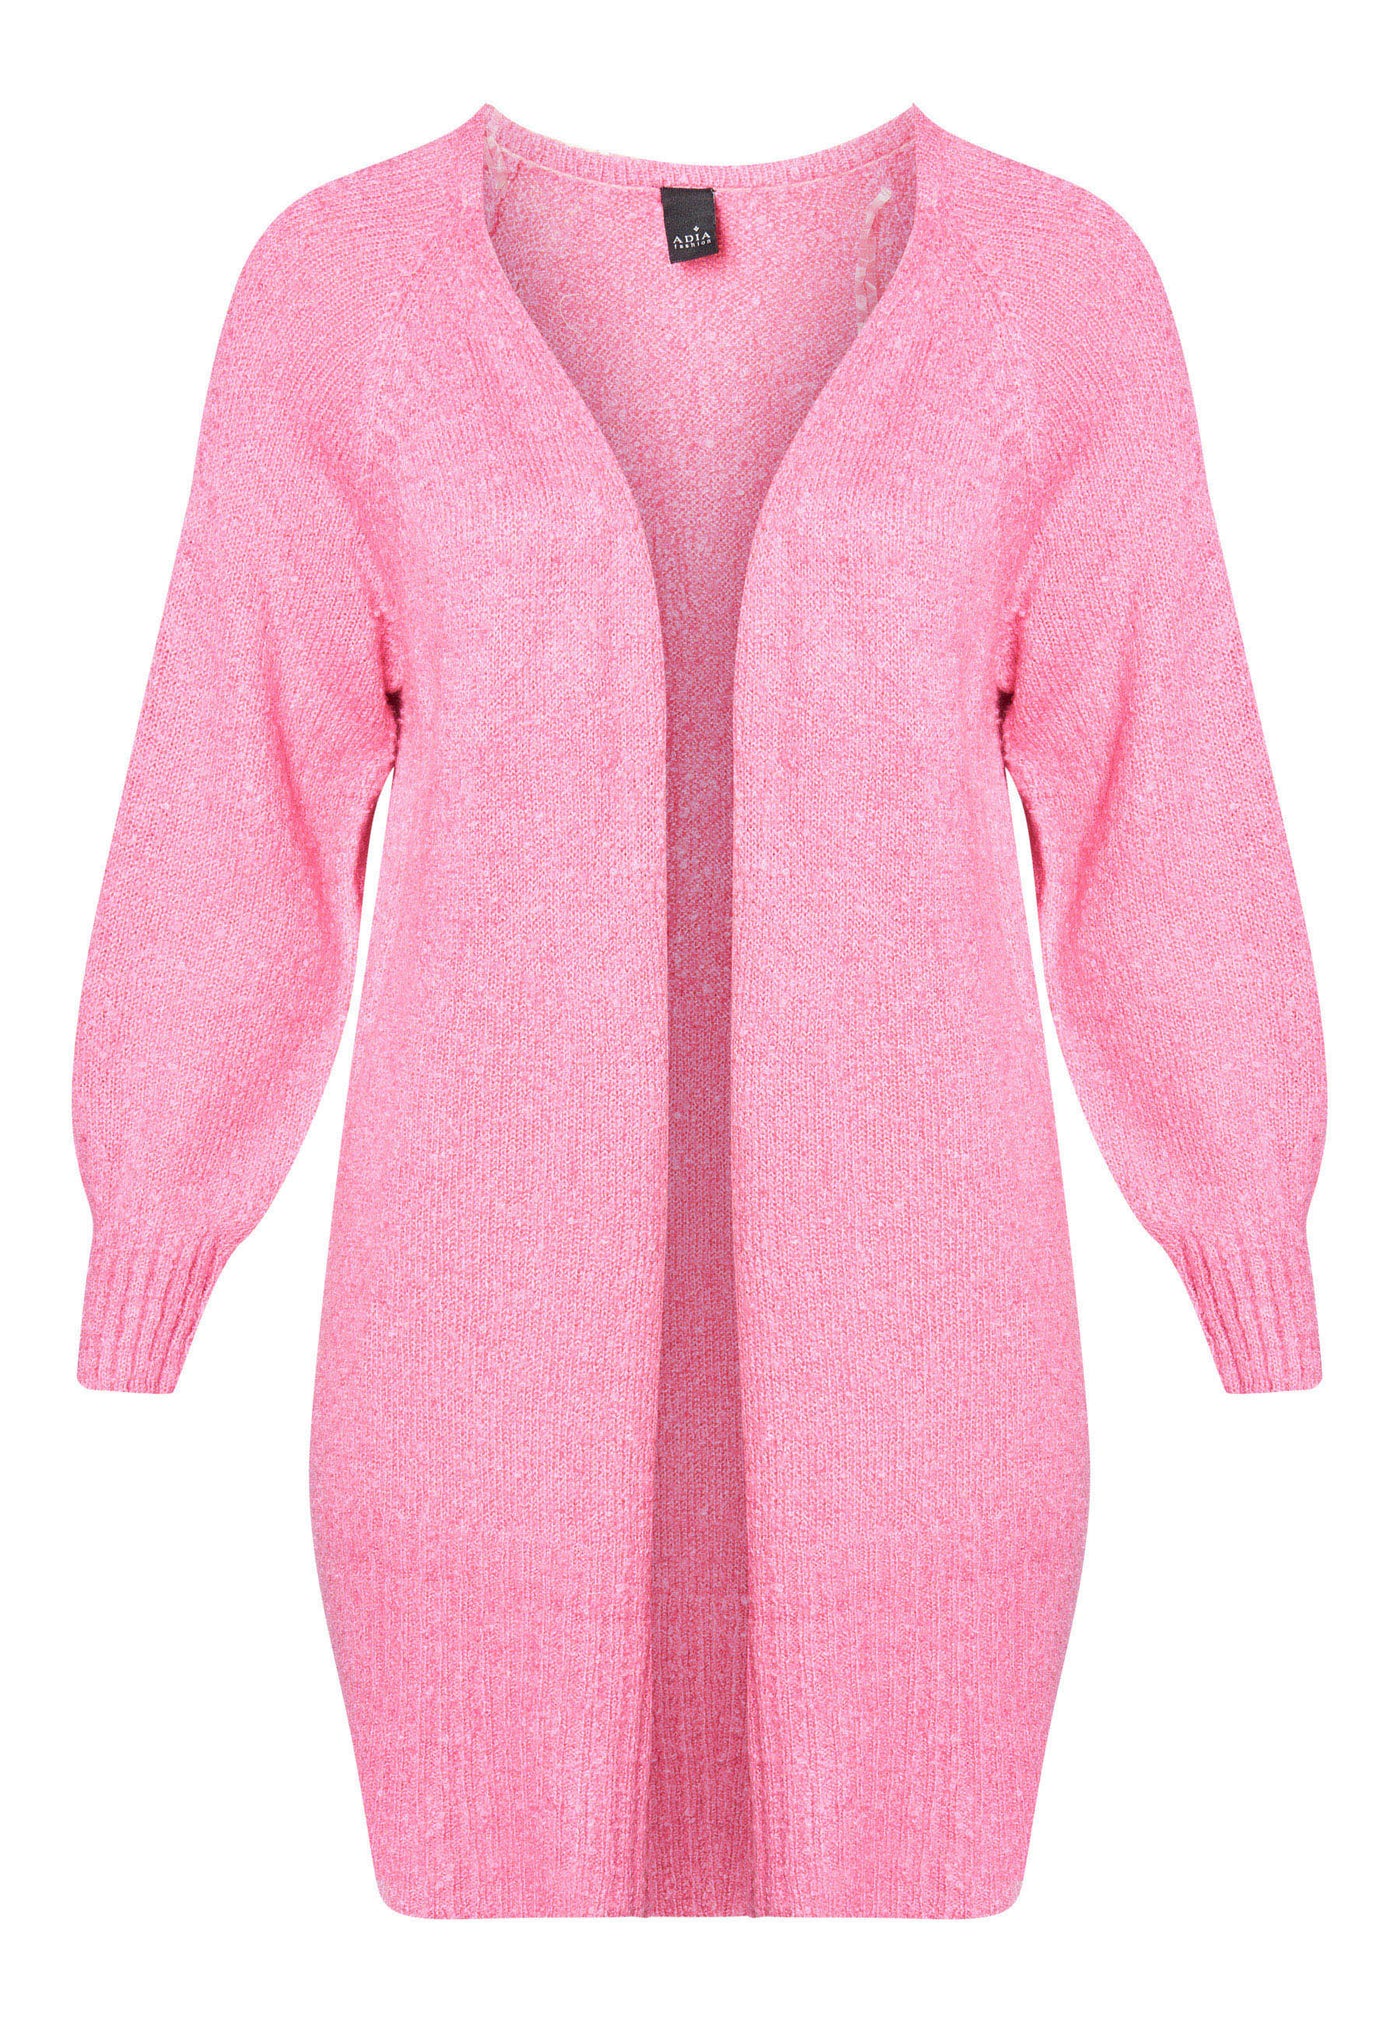 Adia ADEsta Knit Pullover 6300 Spring Pink